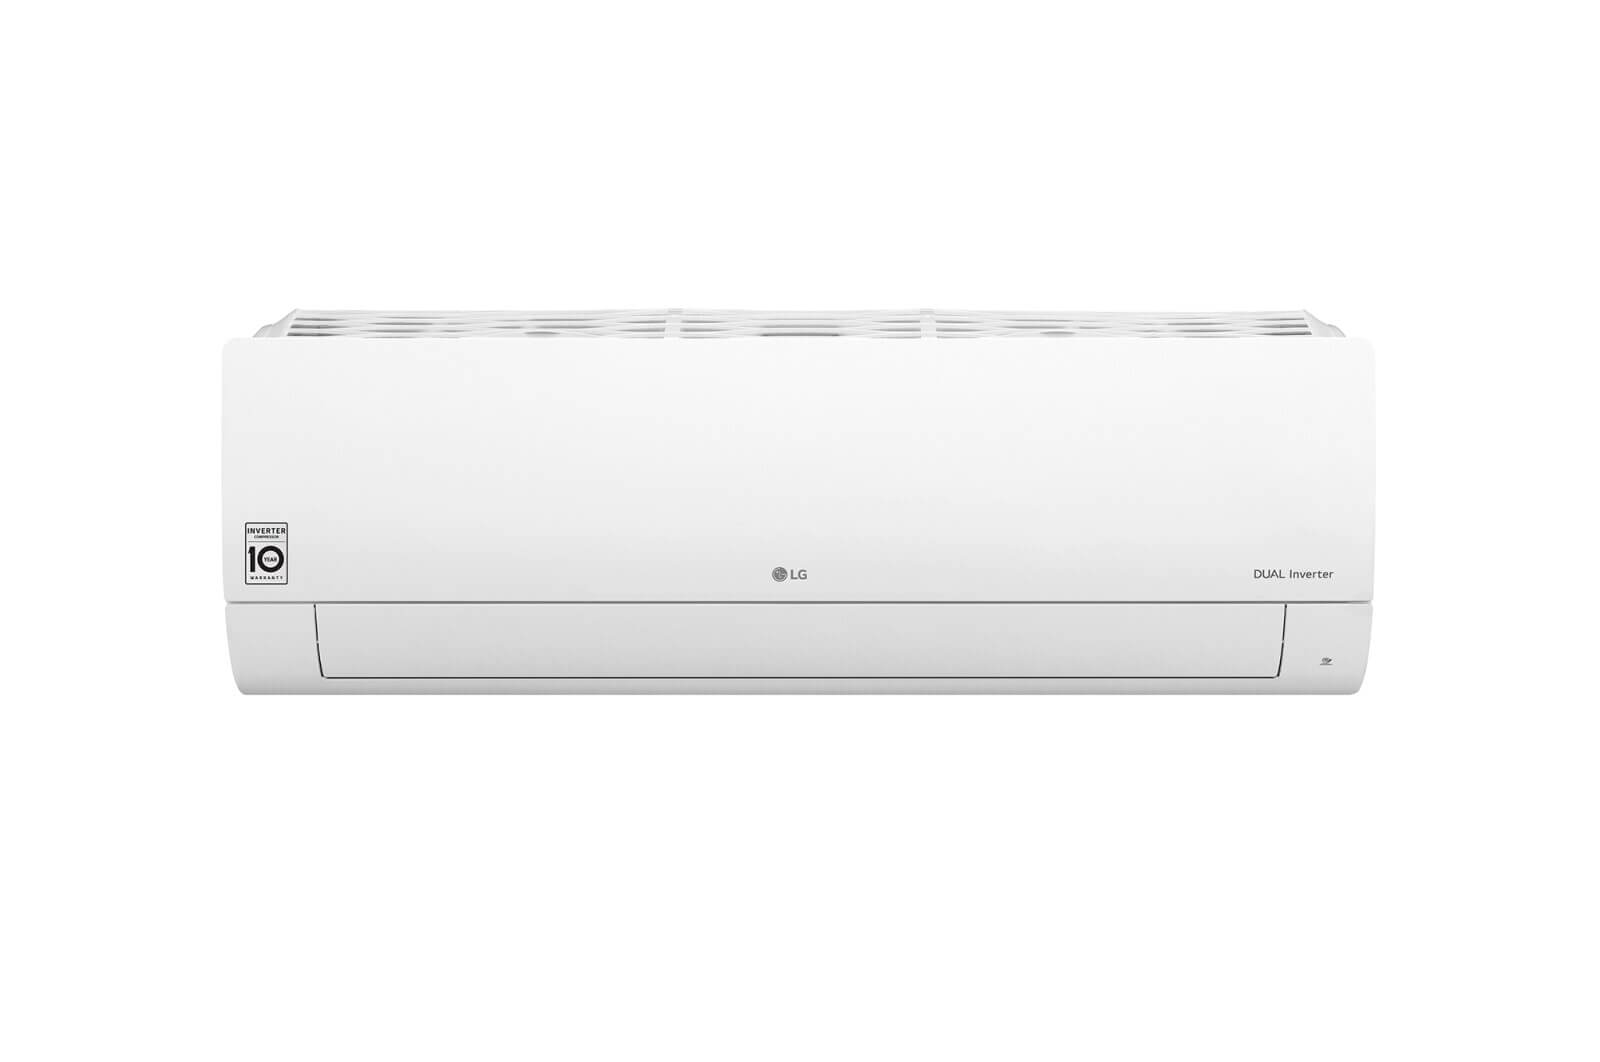 LG樂金-DUALCOOL WiFi雙迴轉變頻空調 - 經典冷暖型_3.6kW